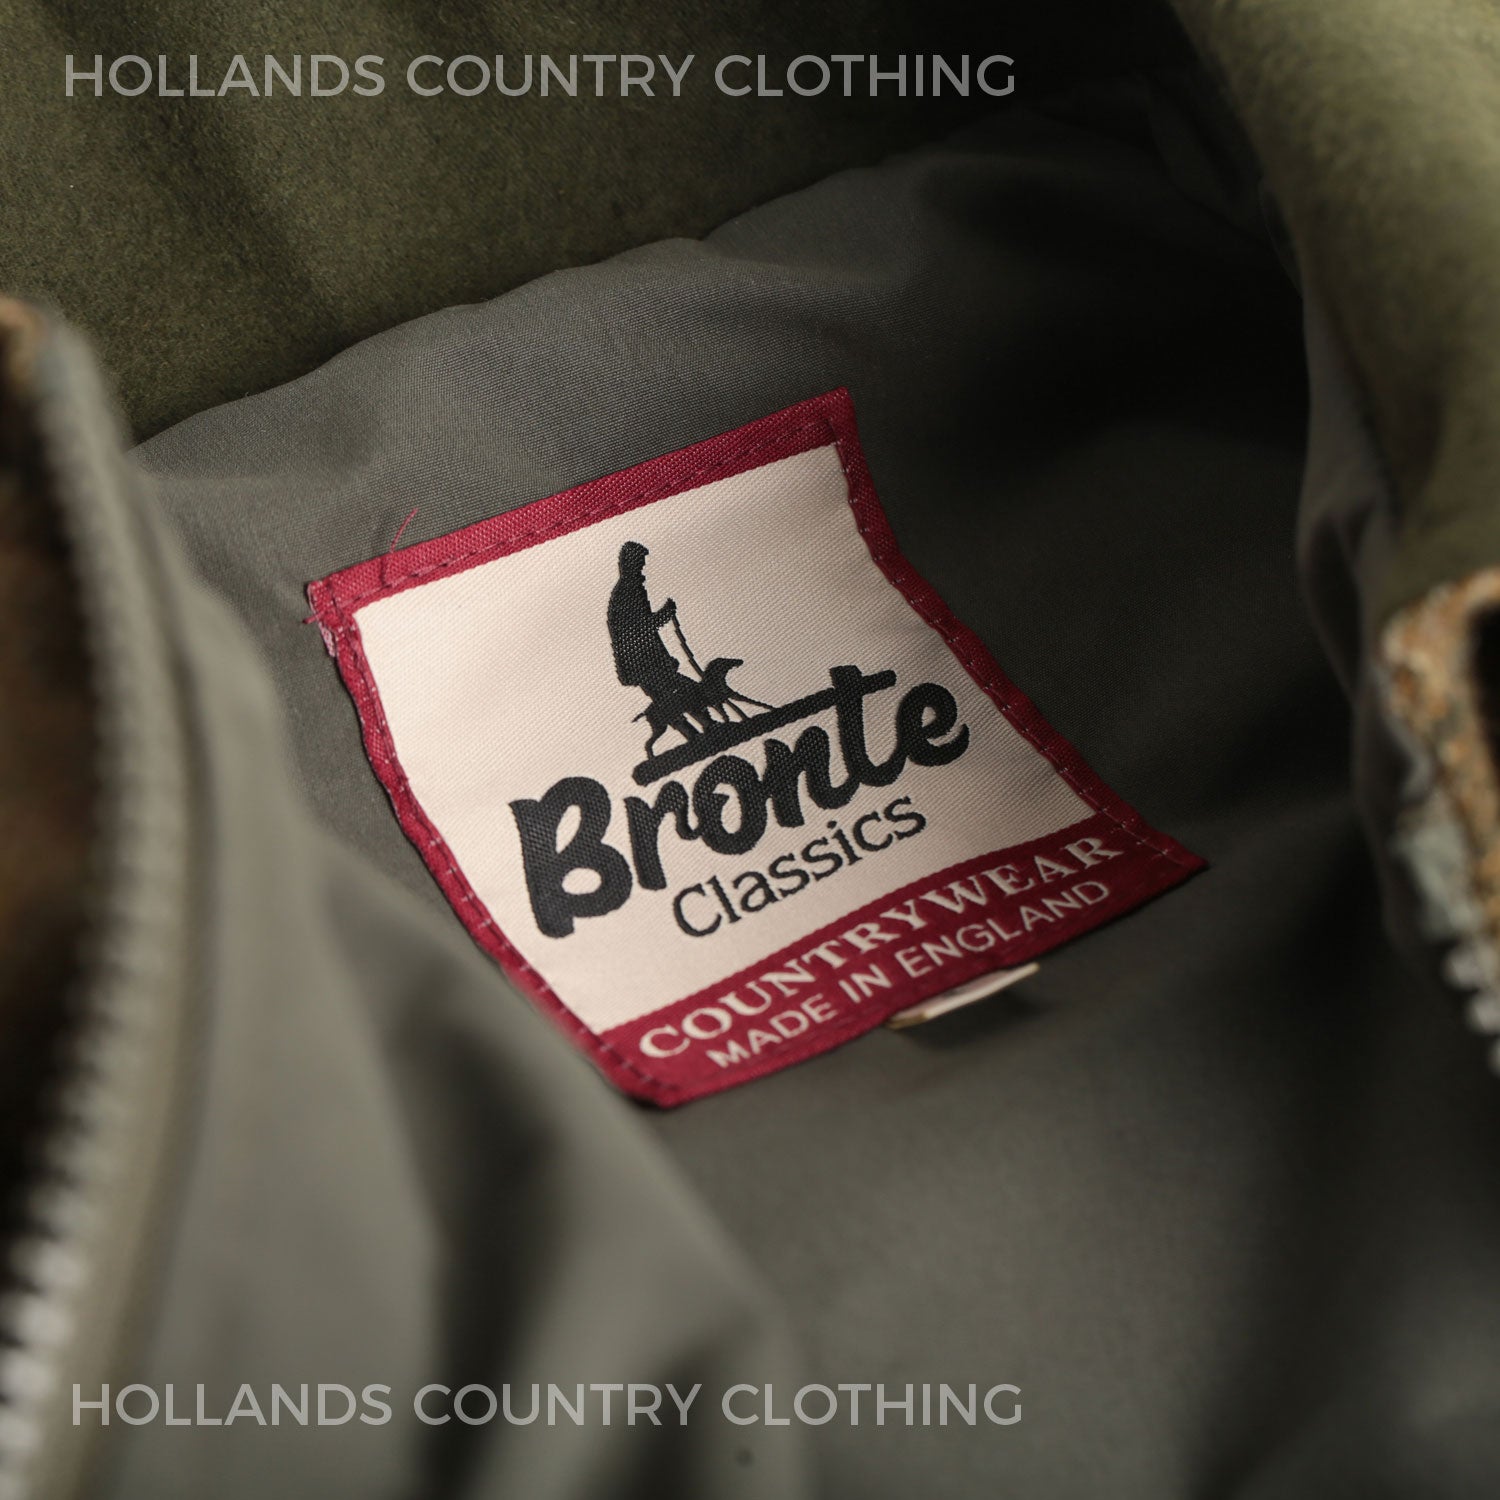 Bronte tweed clothing label 